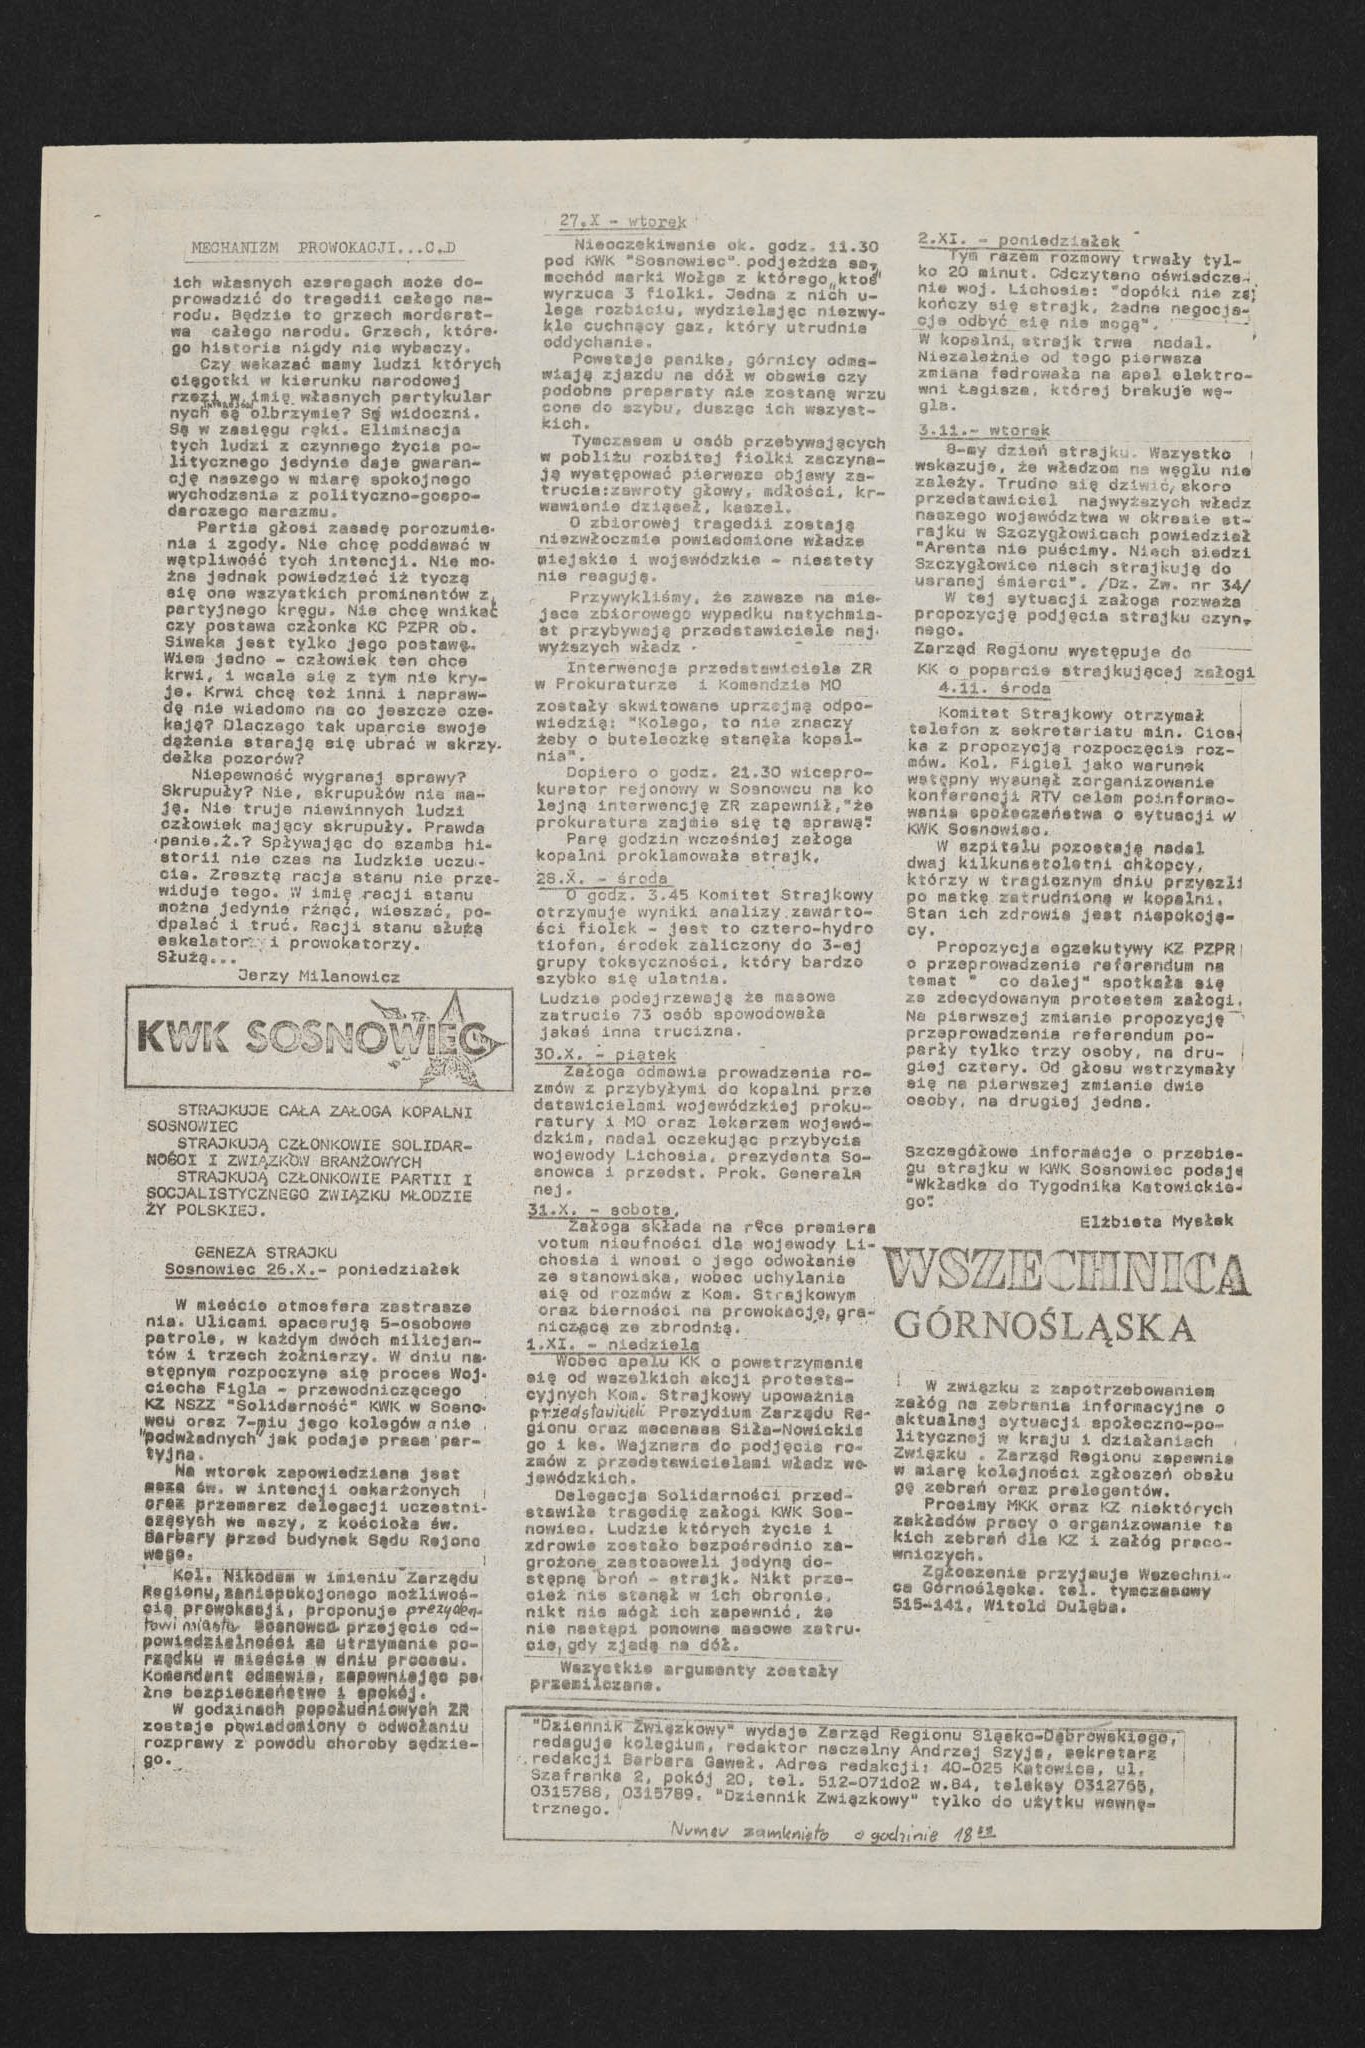 Dziennik związkowy nr 52 5.11.1981